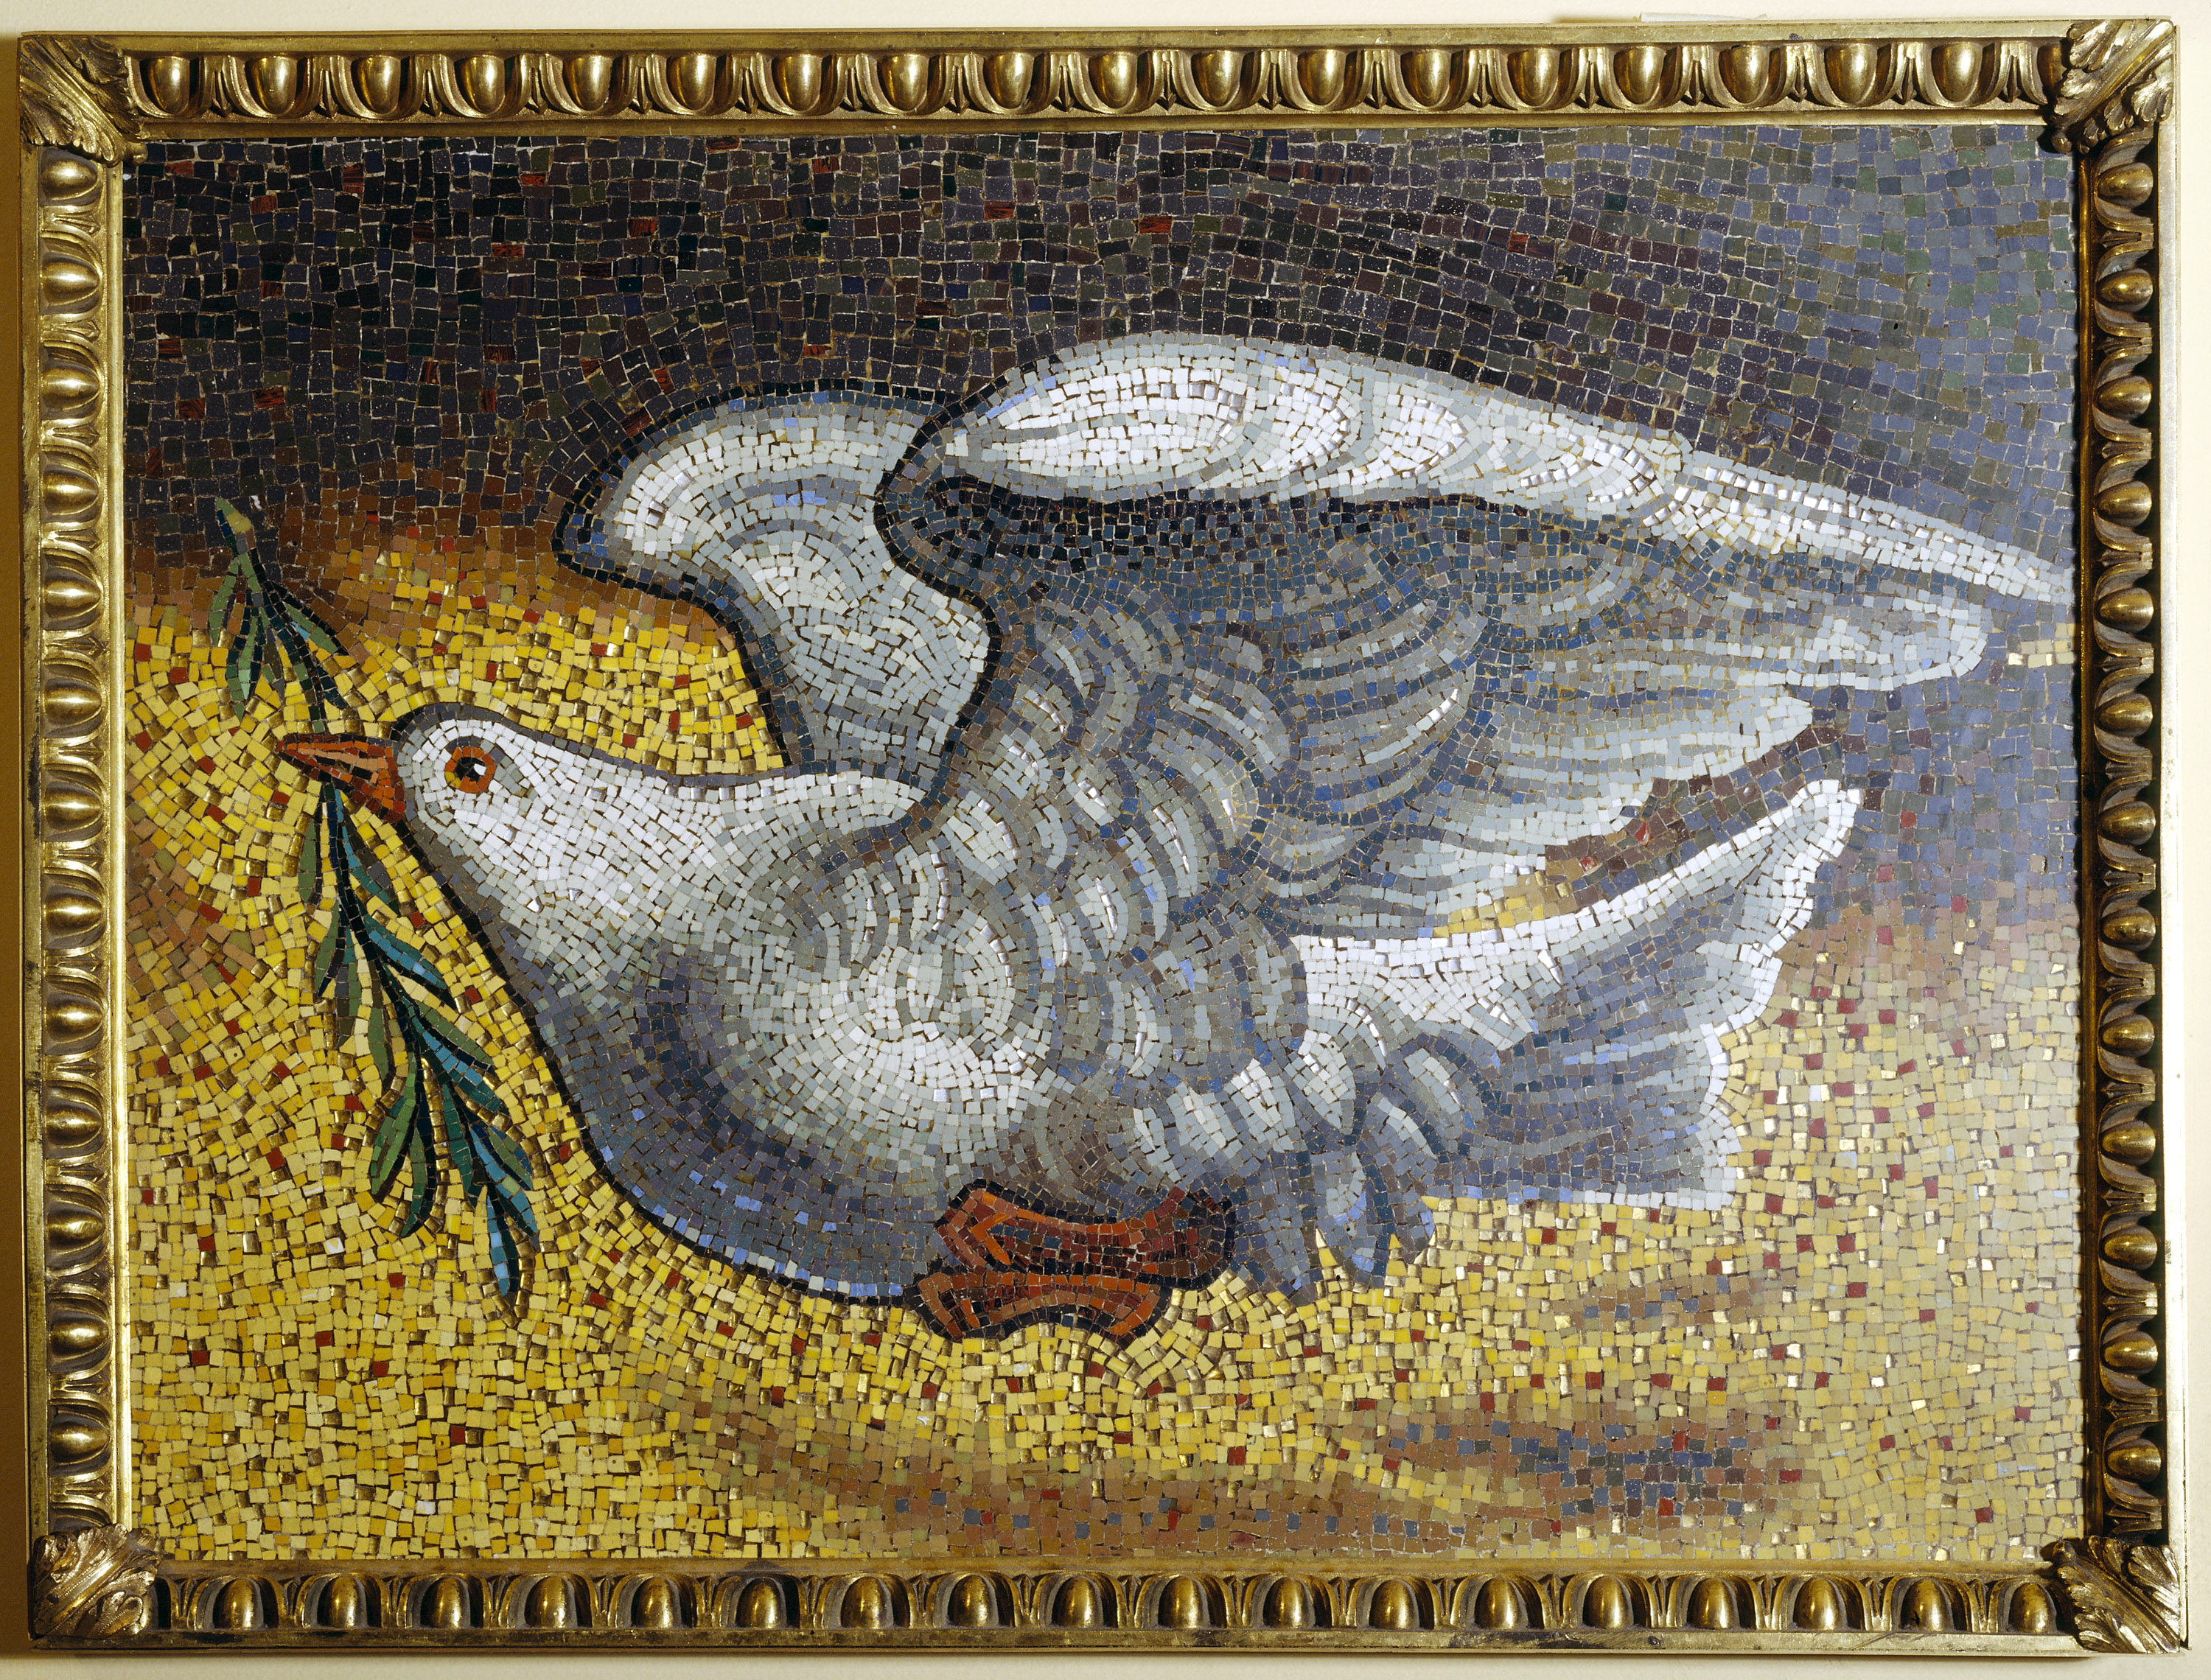 和平鸽复制品, UNNY151G, 1979, 罗马教廷